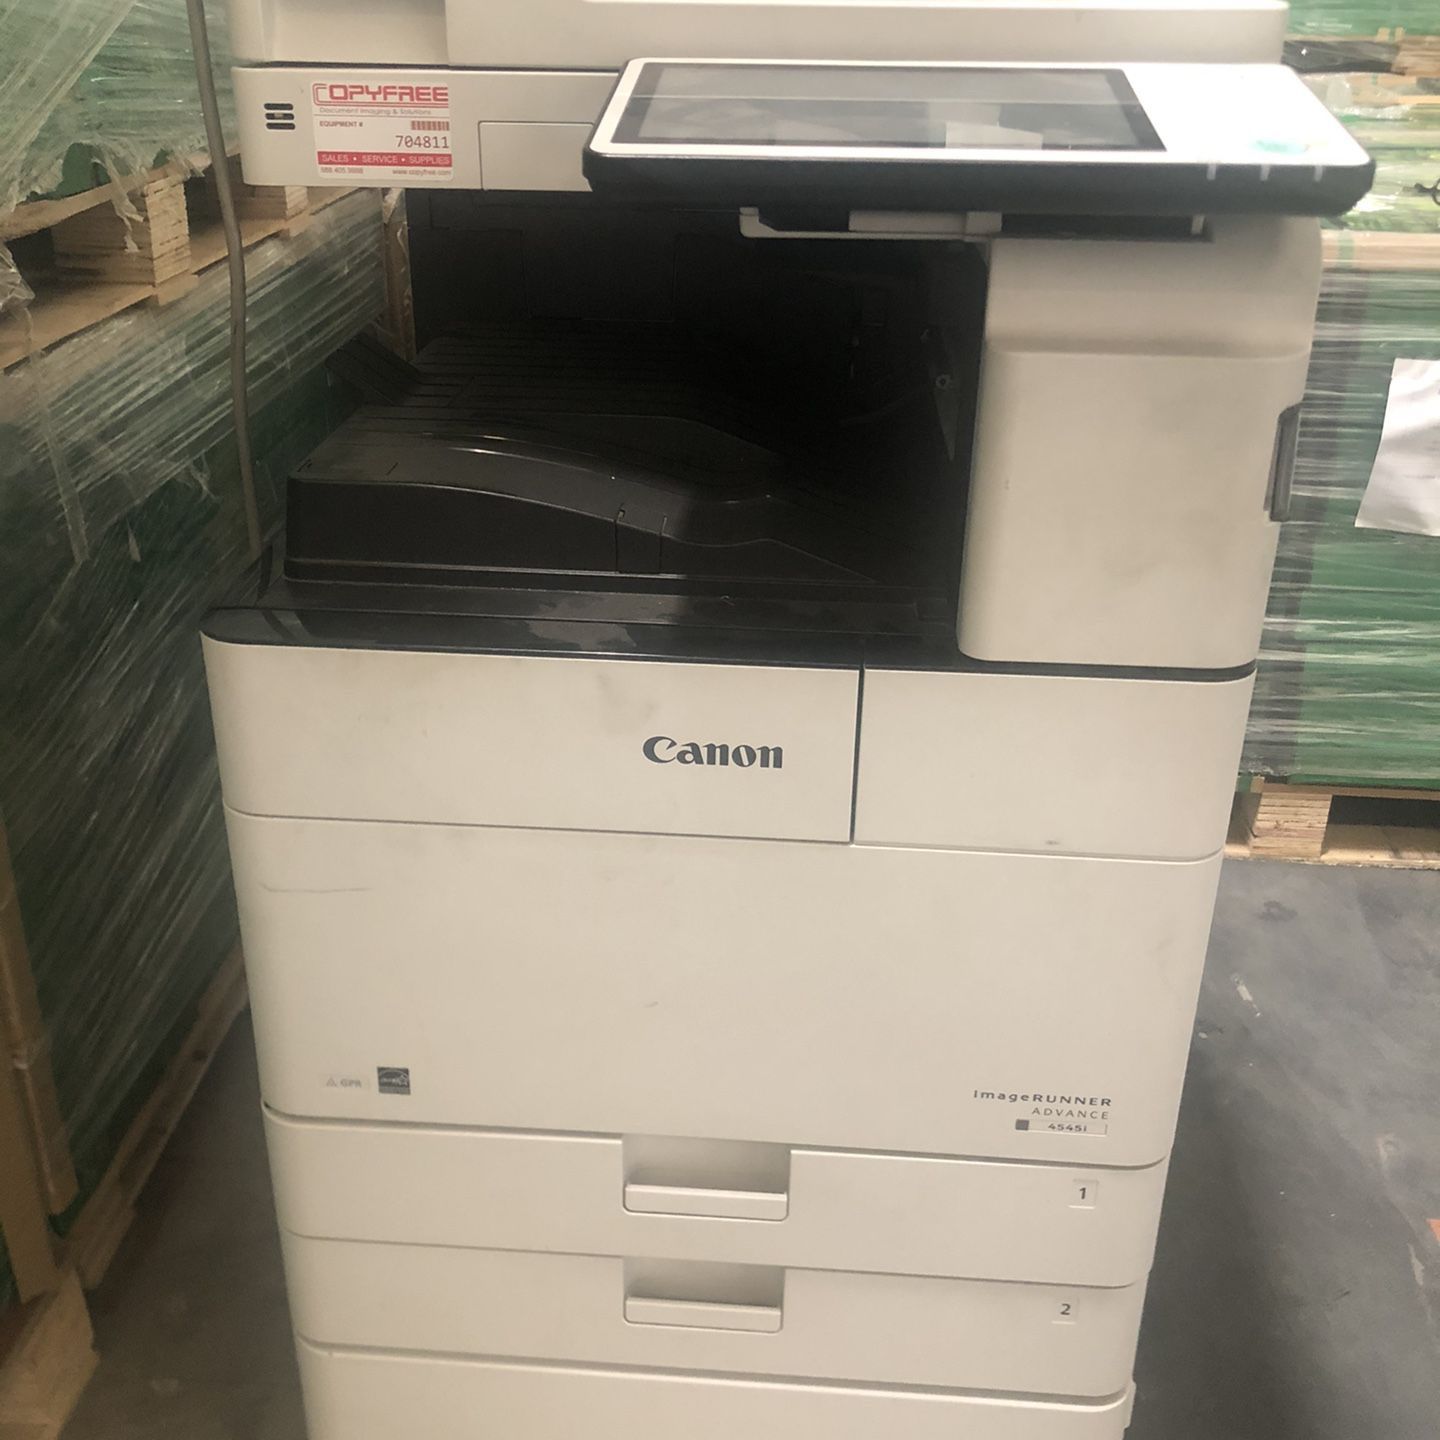 Canon image runner advance 4545i commercial printer